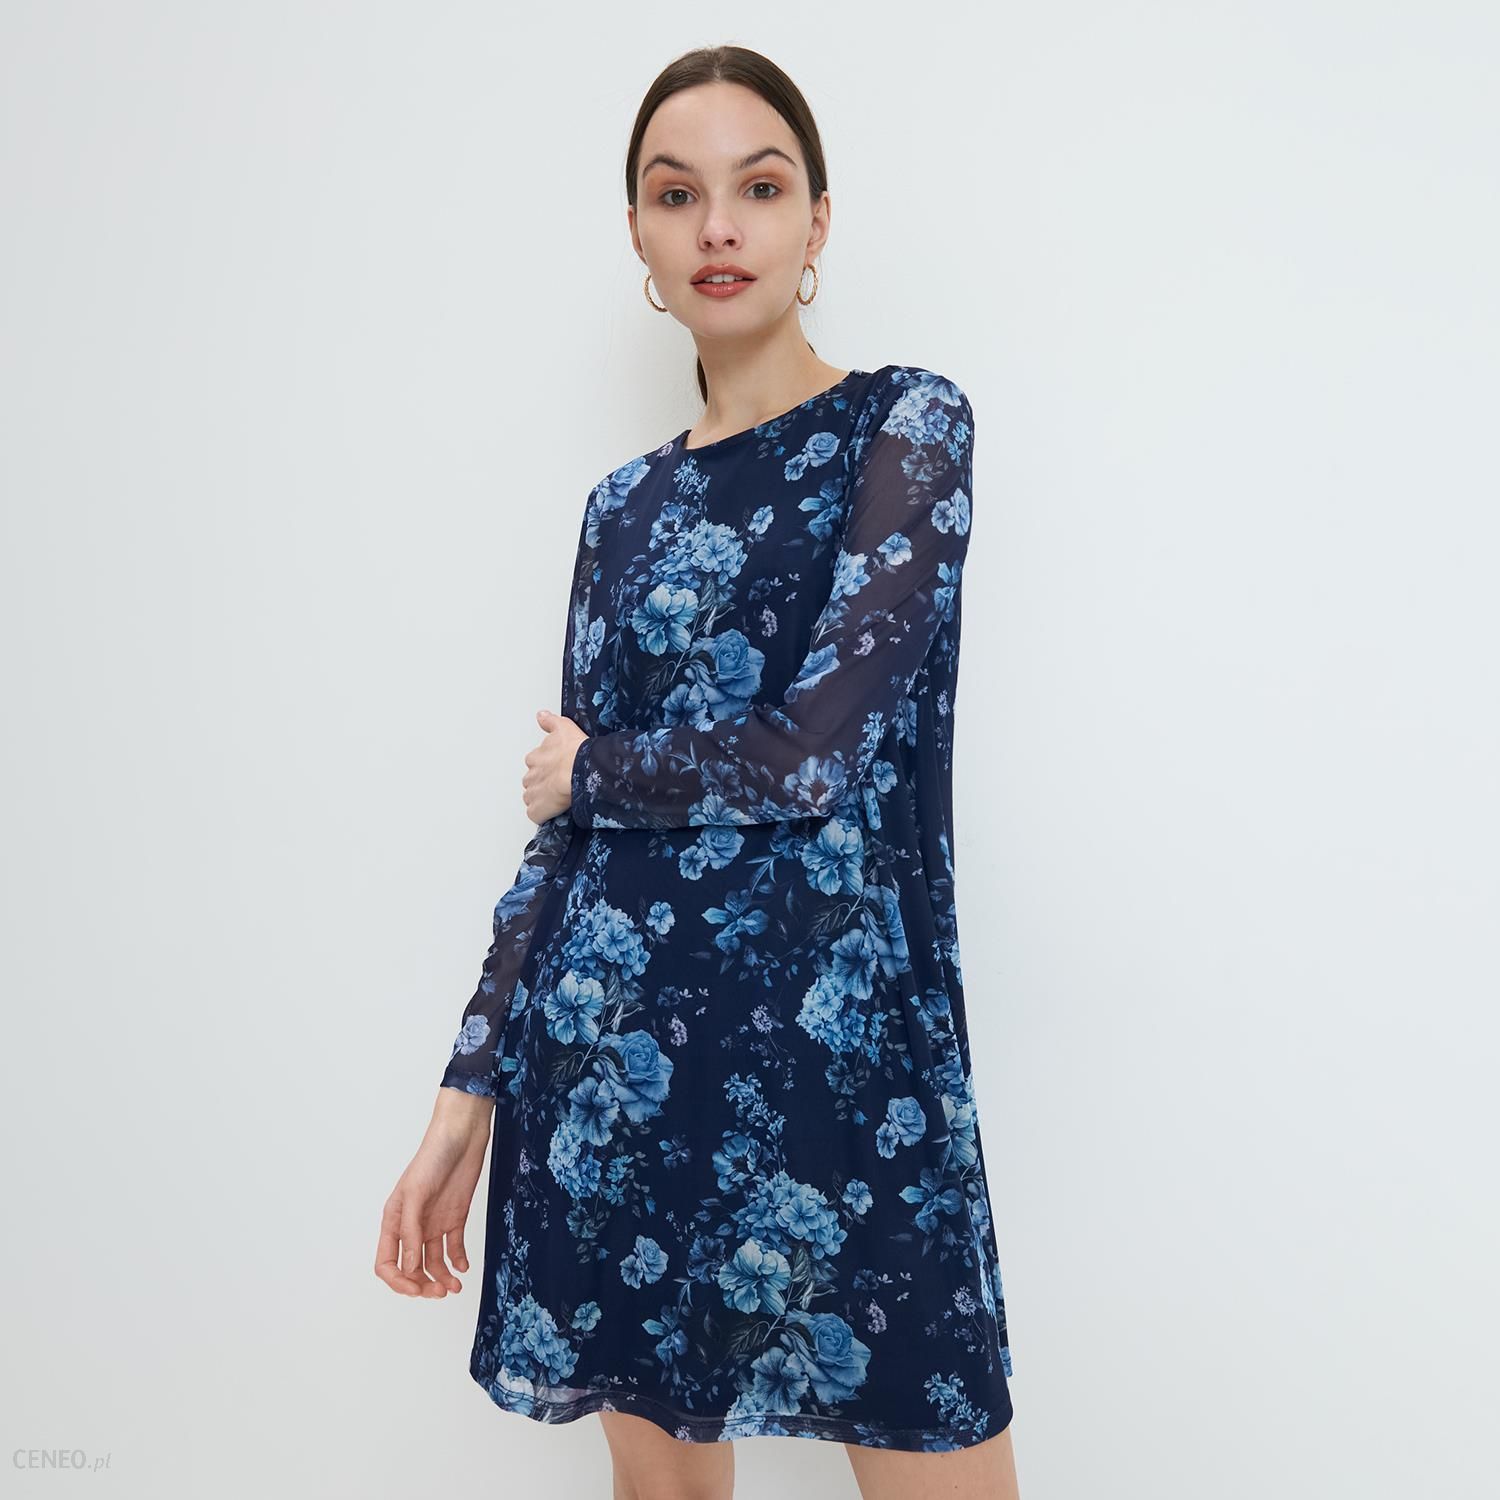 Mohito - Dzianinowa sukienka w kwiaty - Niebieski - Ceny i opinie 